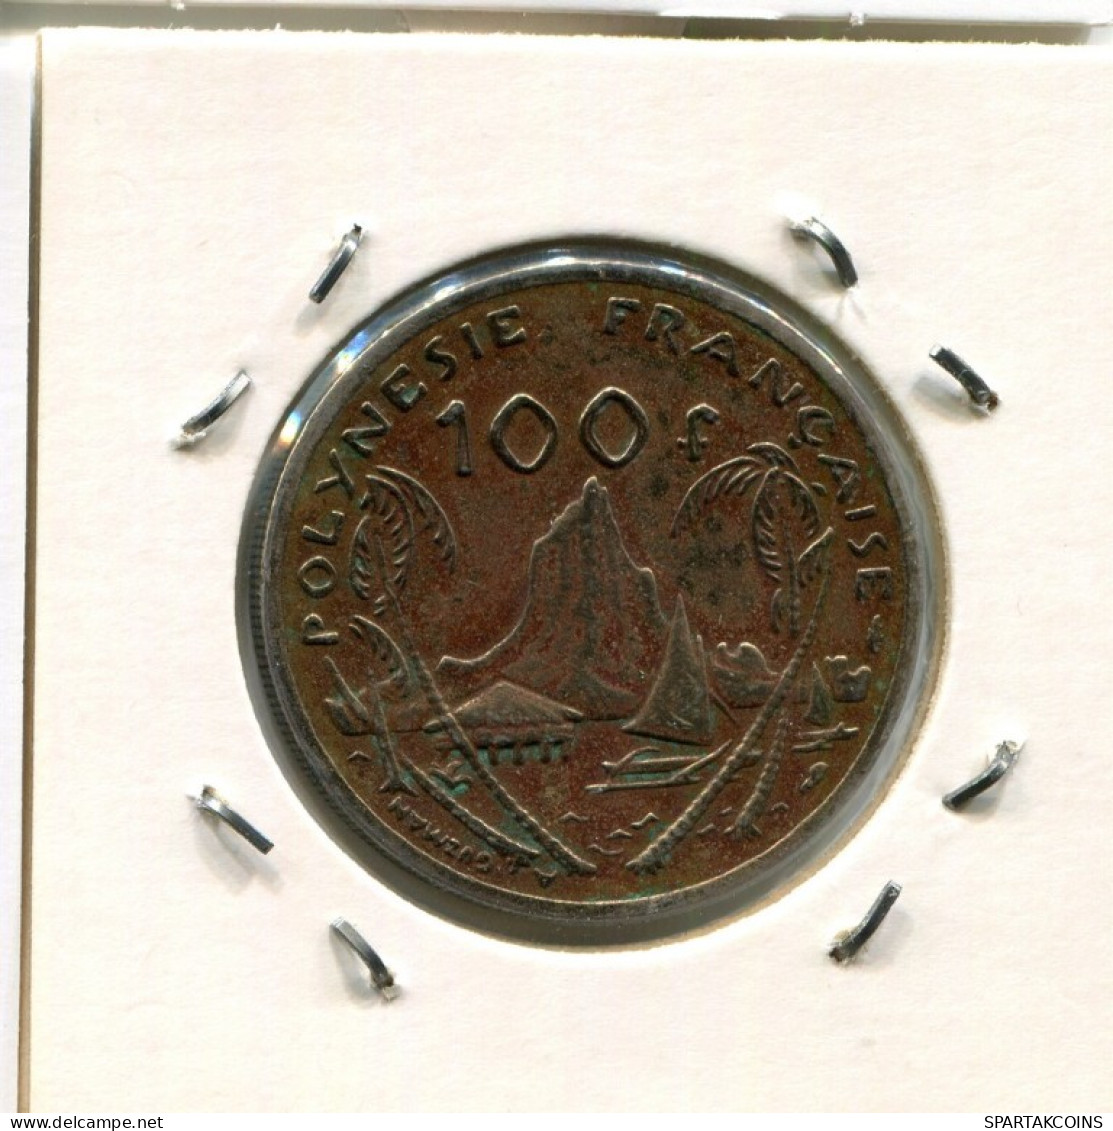 100 FRANCS 1976 Französisch POLYNESIA Koloniale Münze #AM515.D.A - Französisch-Polynesien